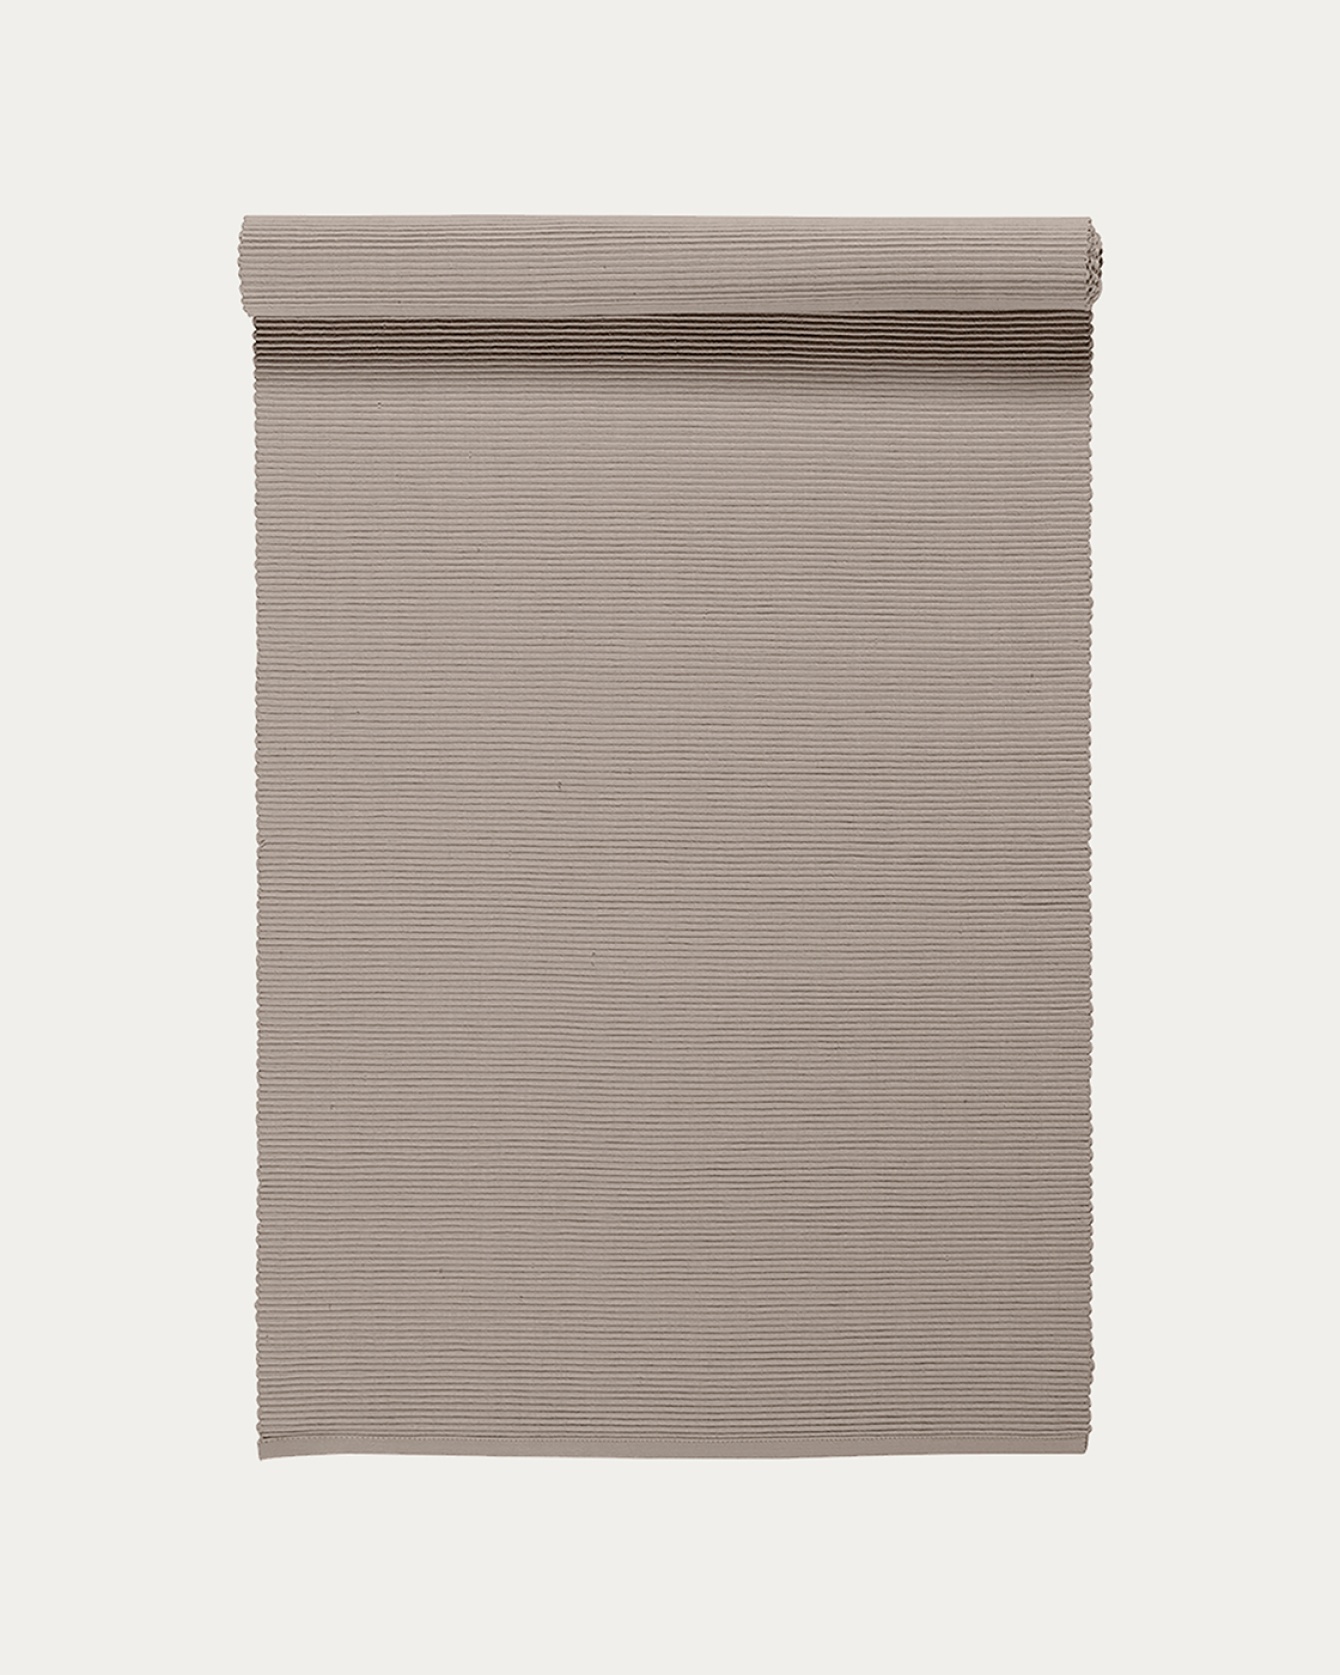 Image du produit chemin de table UNI taupe en coton doux de qualité côtelée de LINUM DESIGN. Taille 45 x 150 cm.